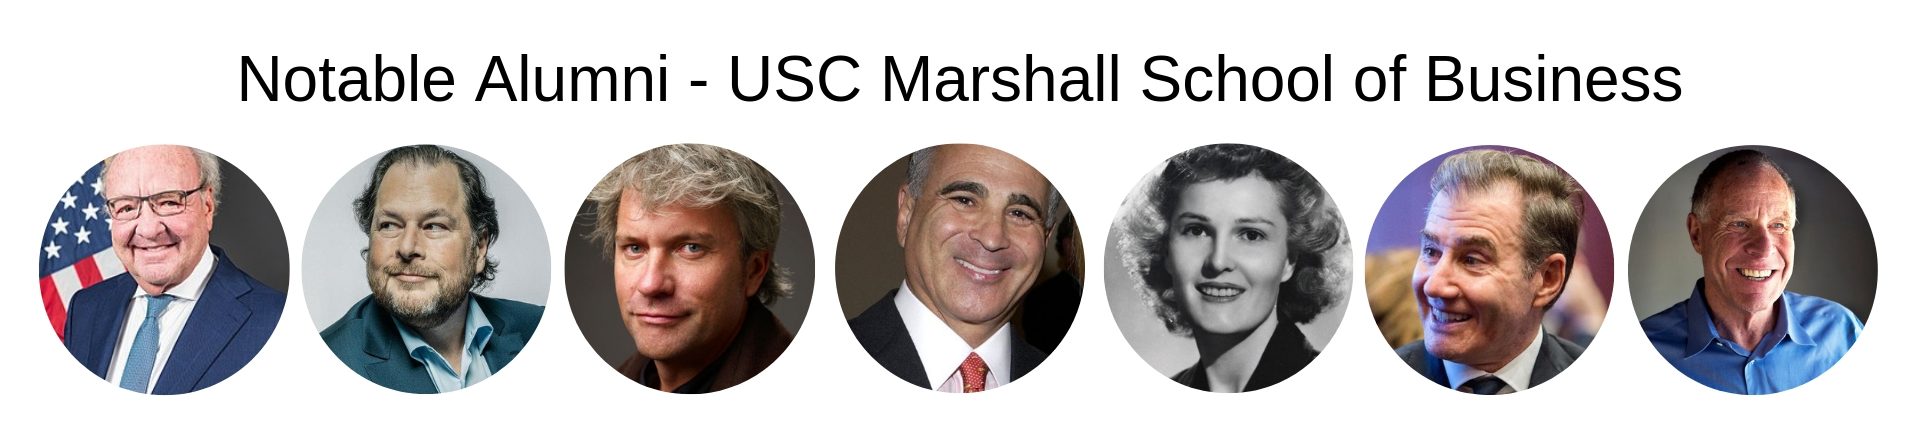 USC Marshall School of Business - USC MBA Program - Notable Alumni